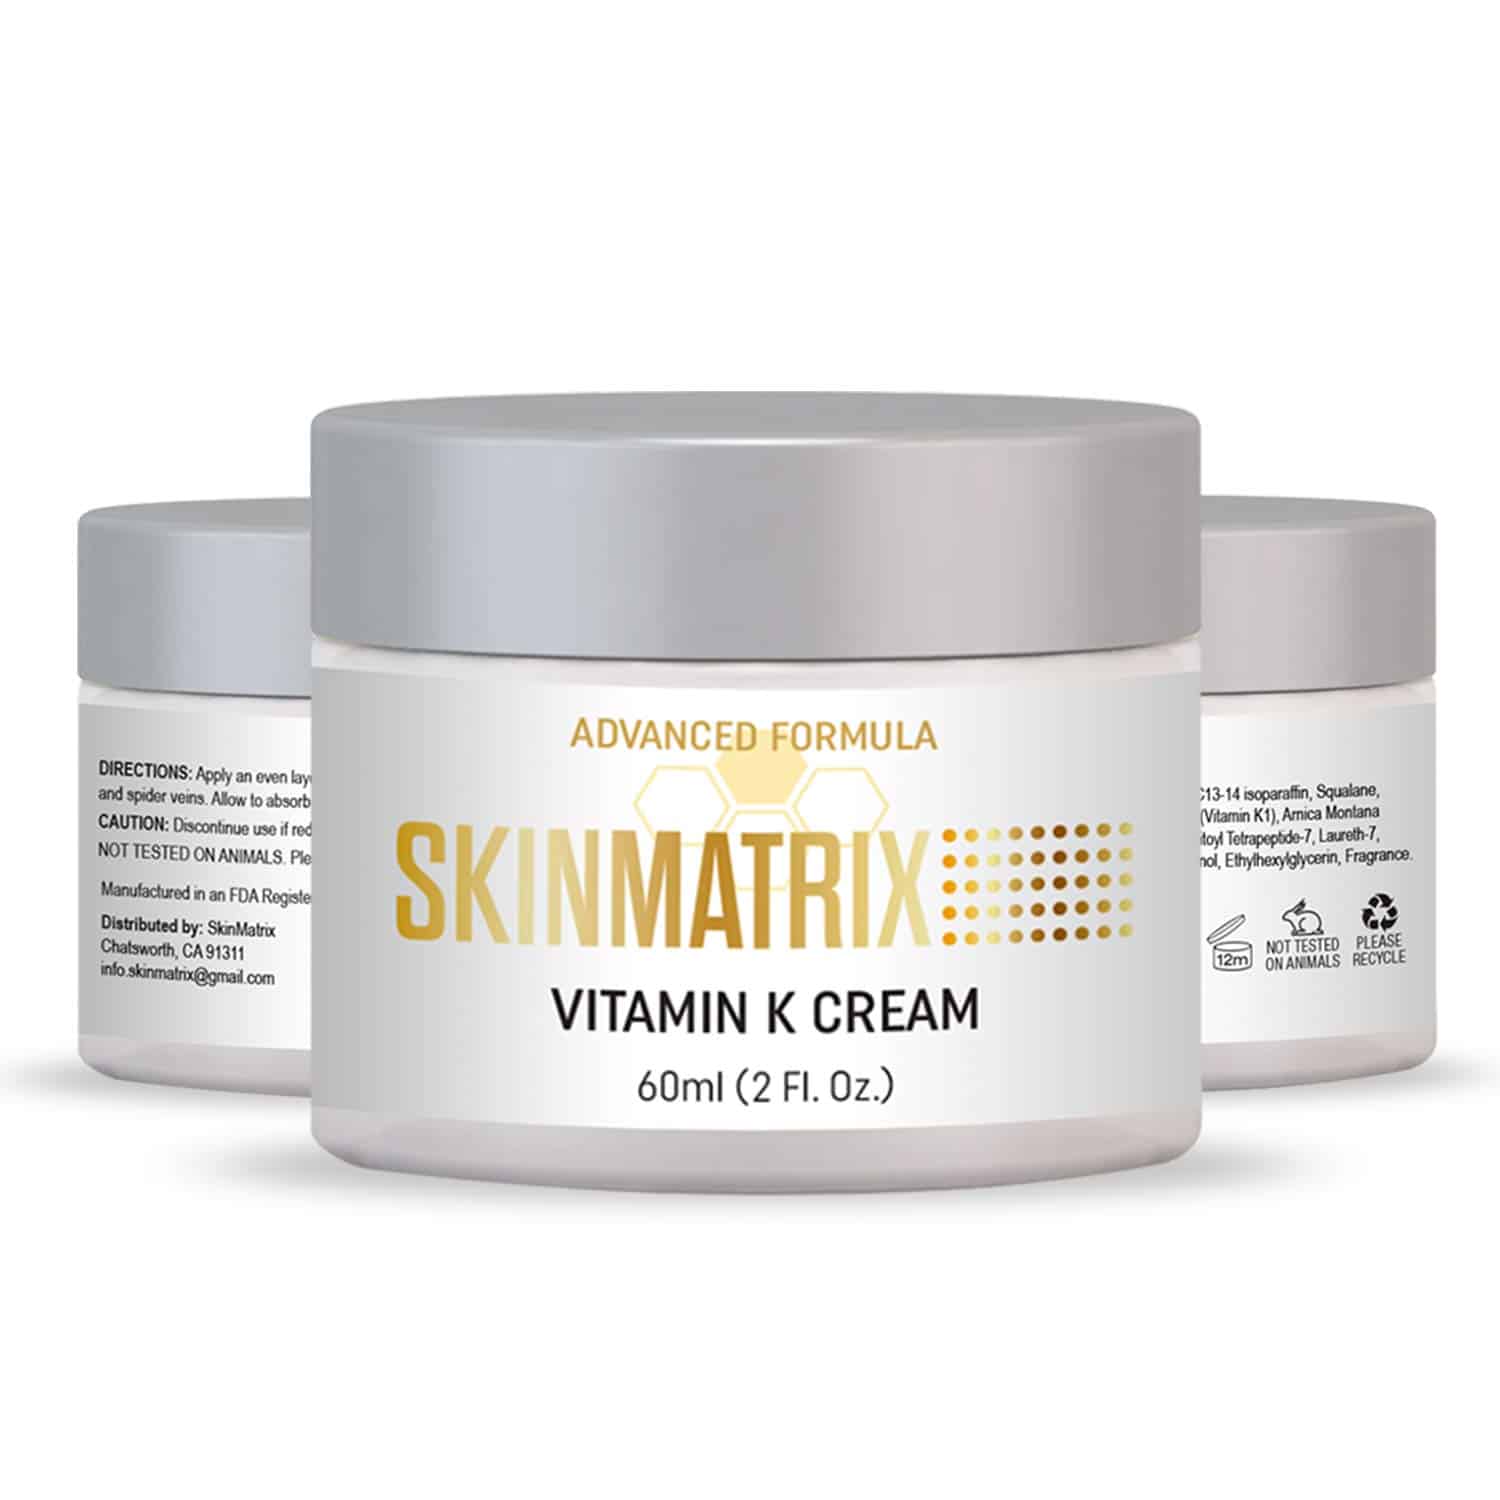 Best Vitamin K Cream For Dark Circles Under Eyes 2020